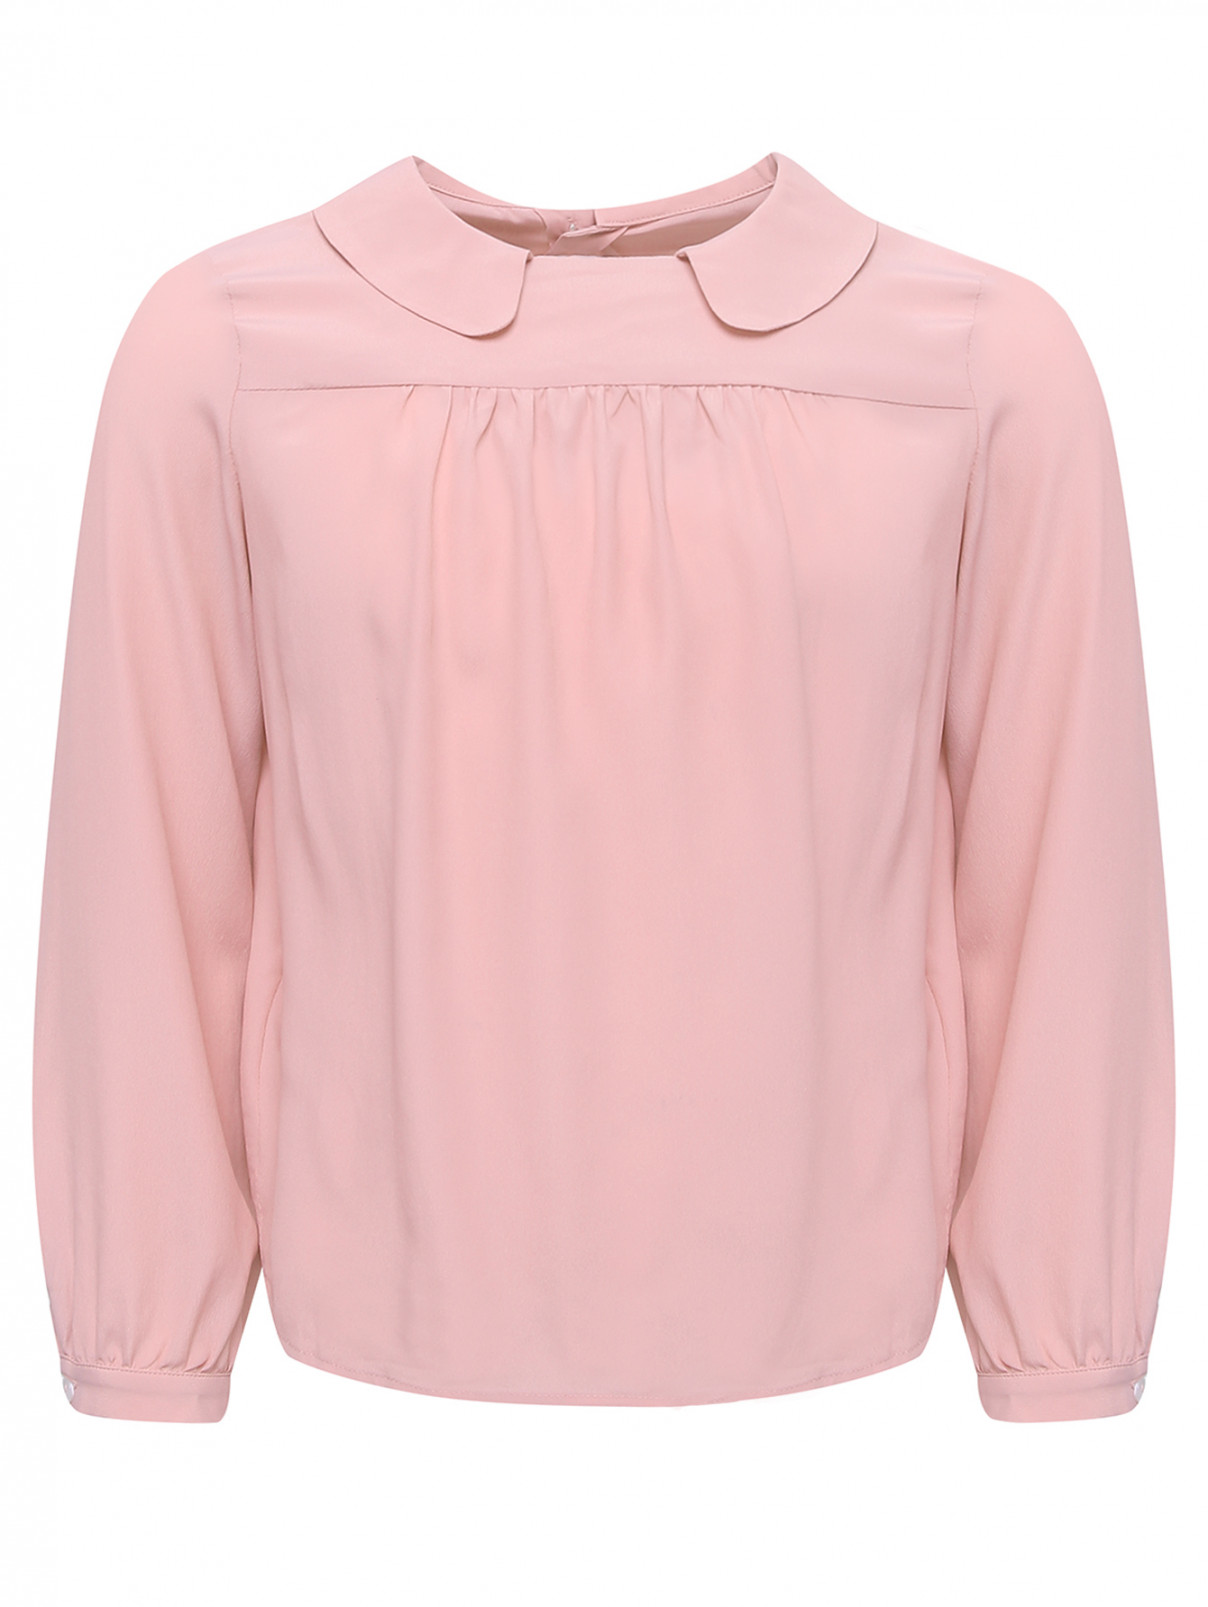 Блуза из шелковистого материала Simonetta  –  Общий вид  – Цвет:  Розовый